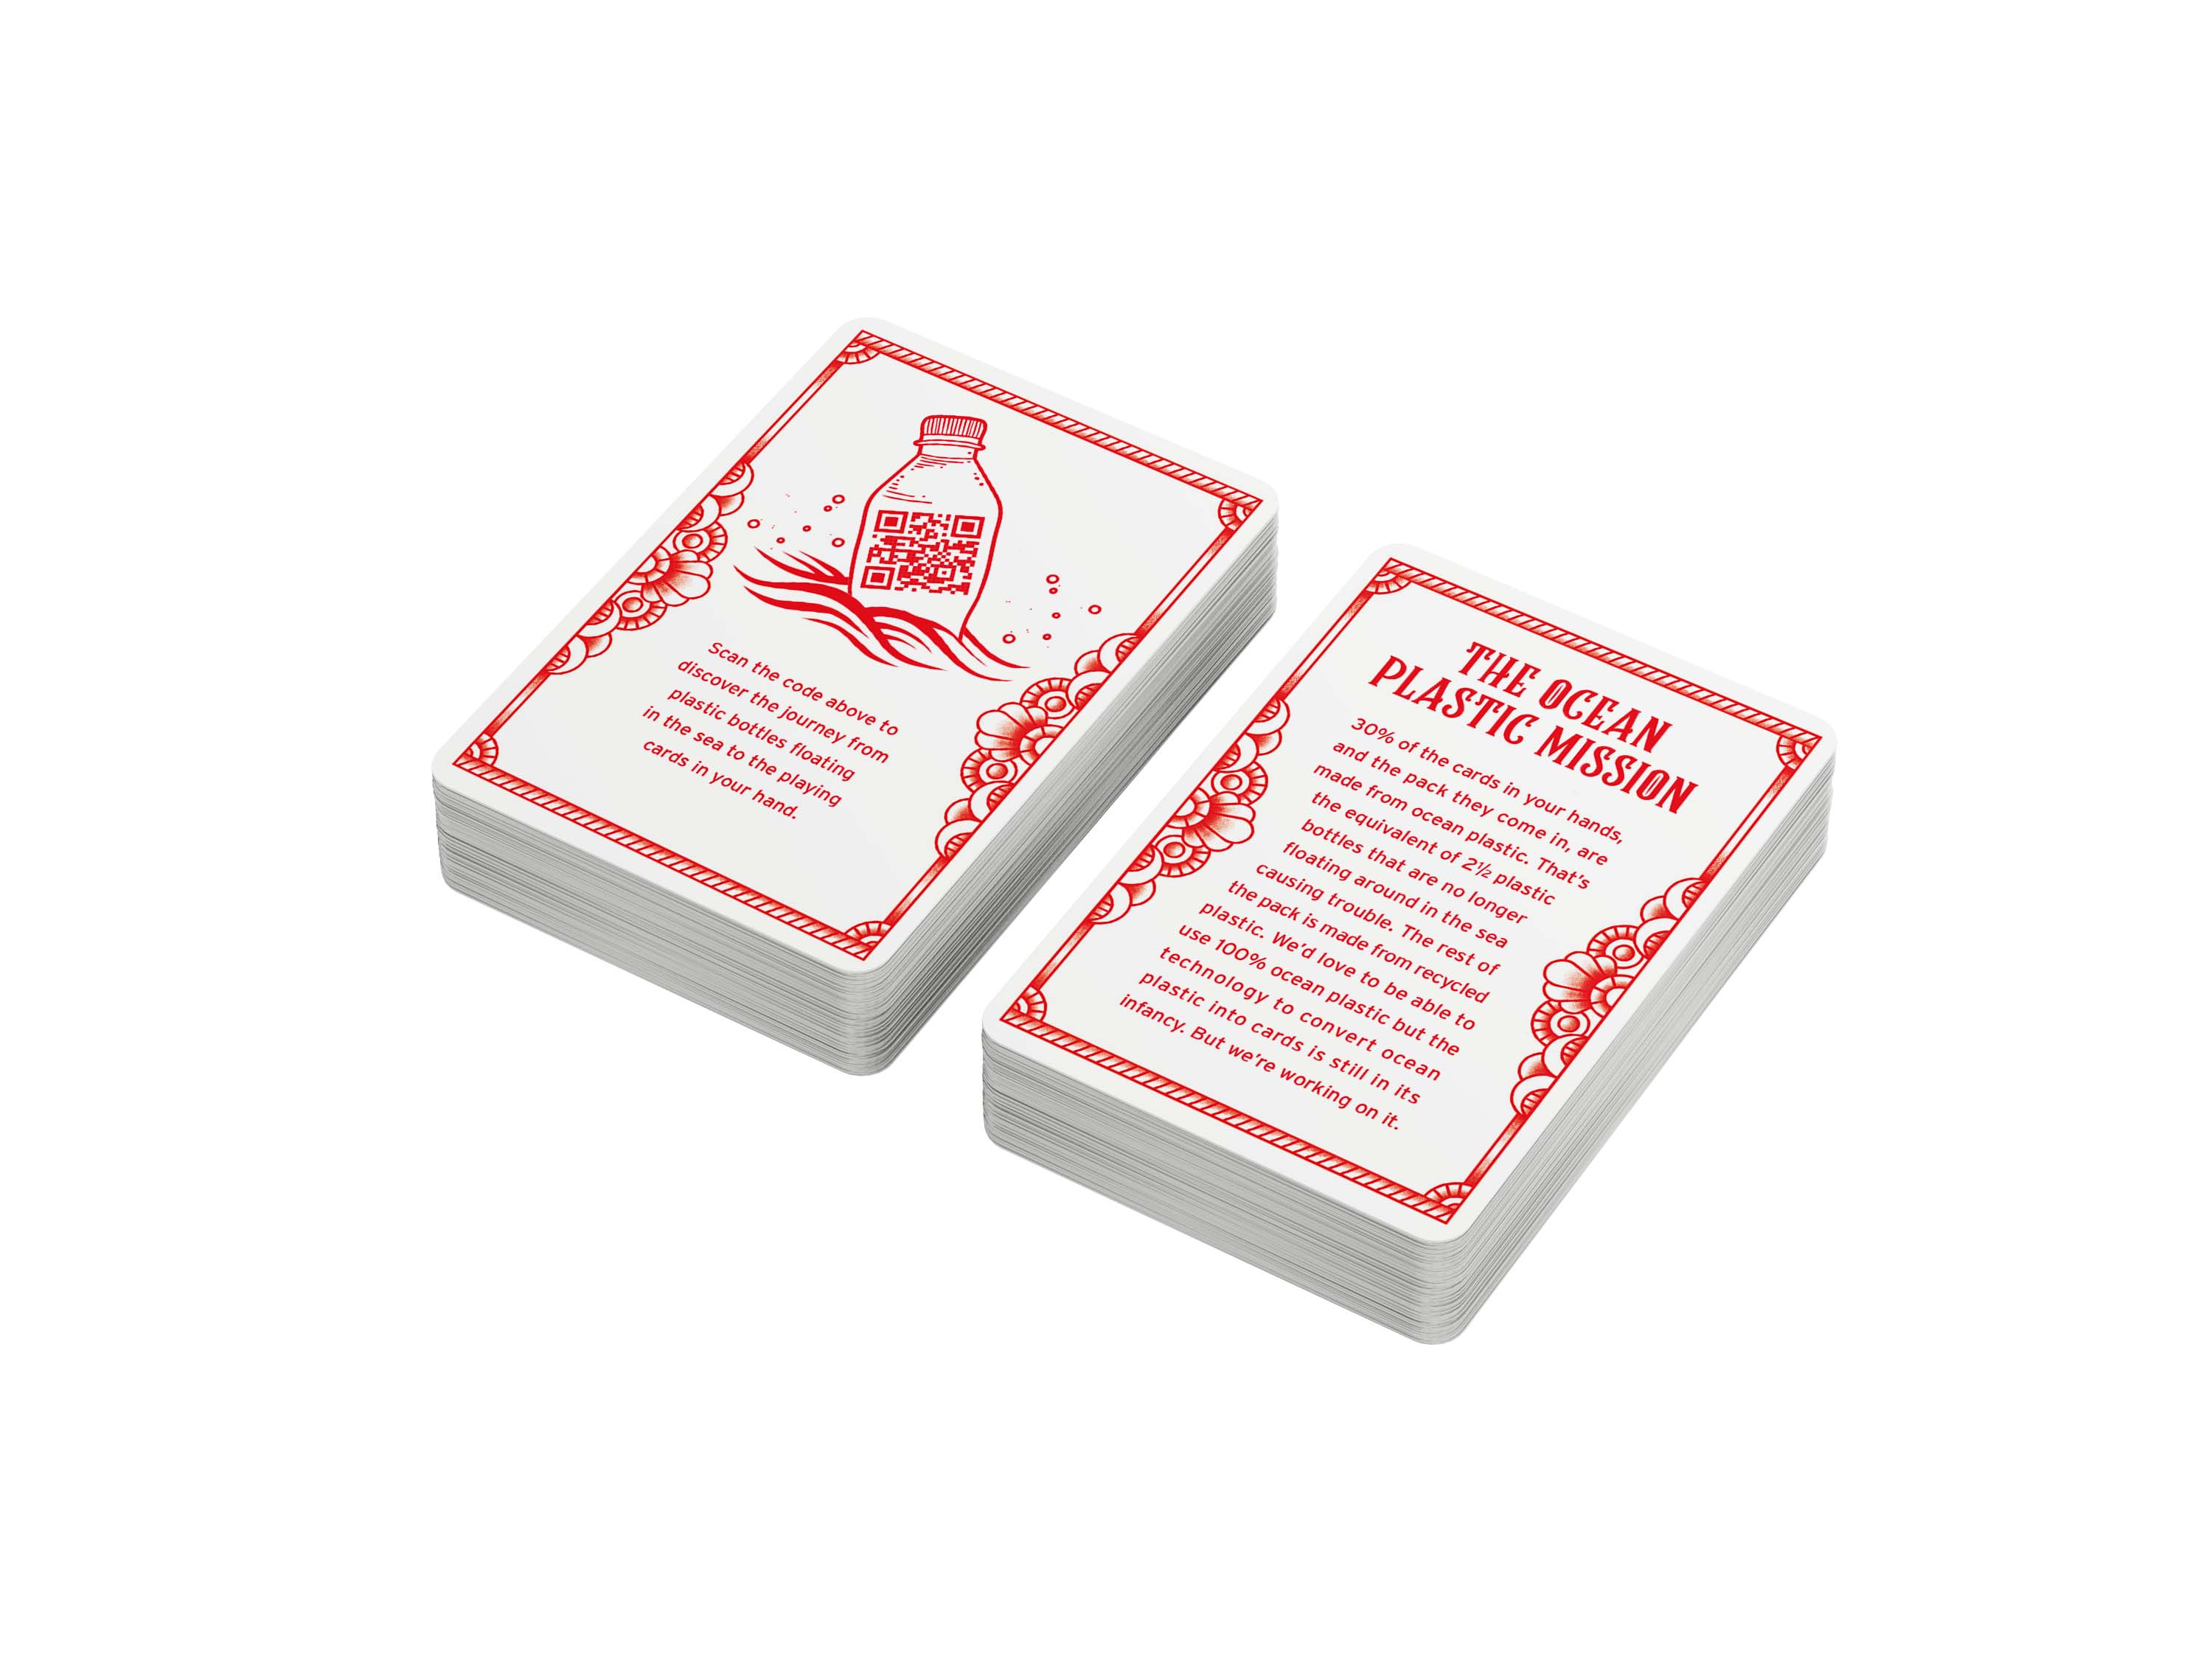 MOOP Ocean Plastic Waterproof Playing Cards [New] | Yard's Games Ltd